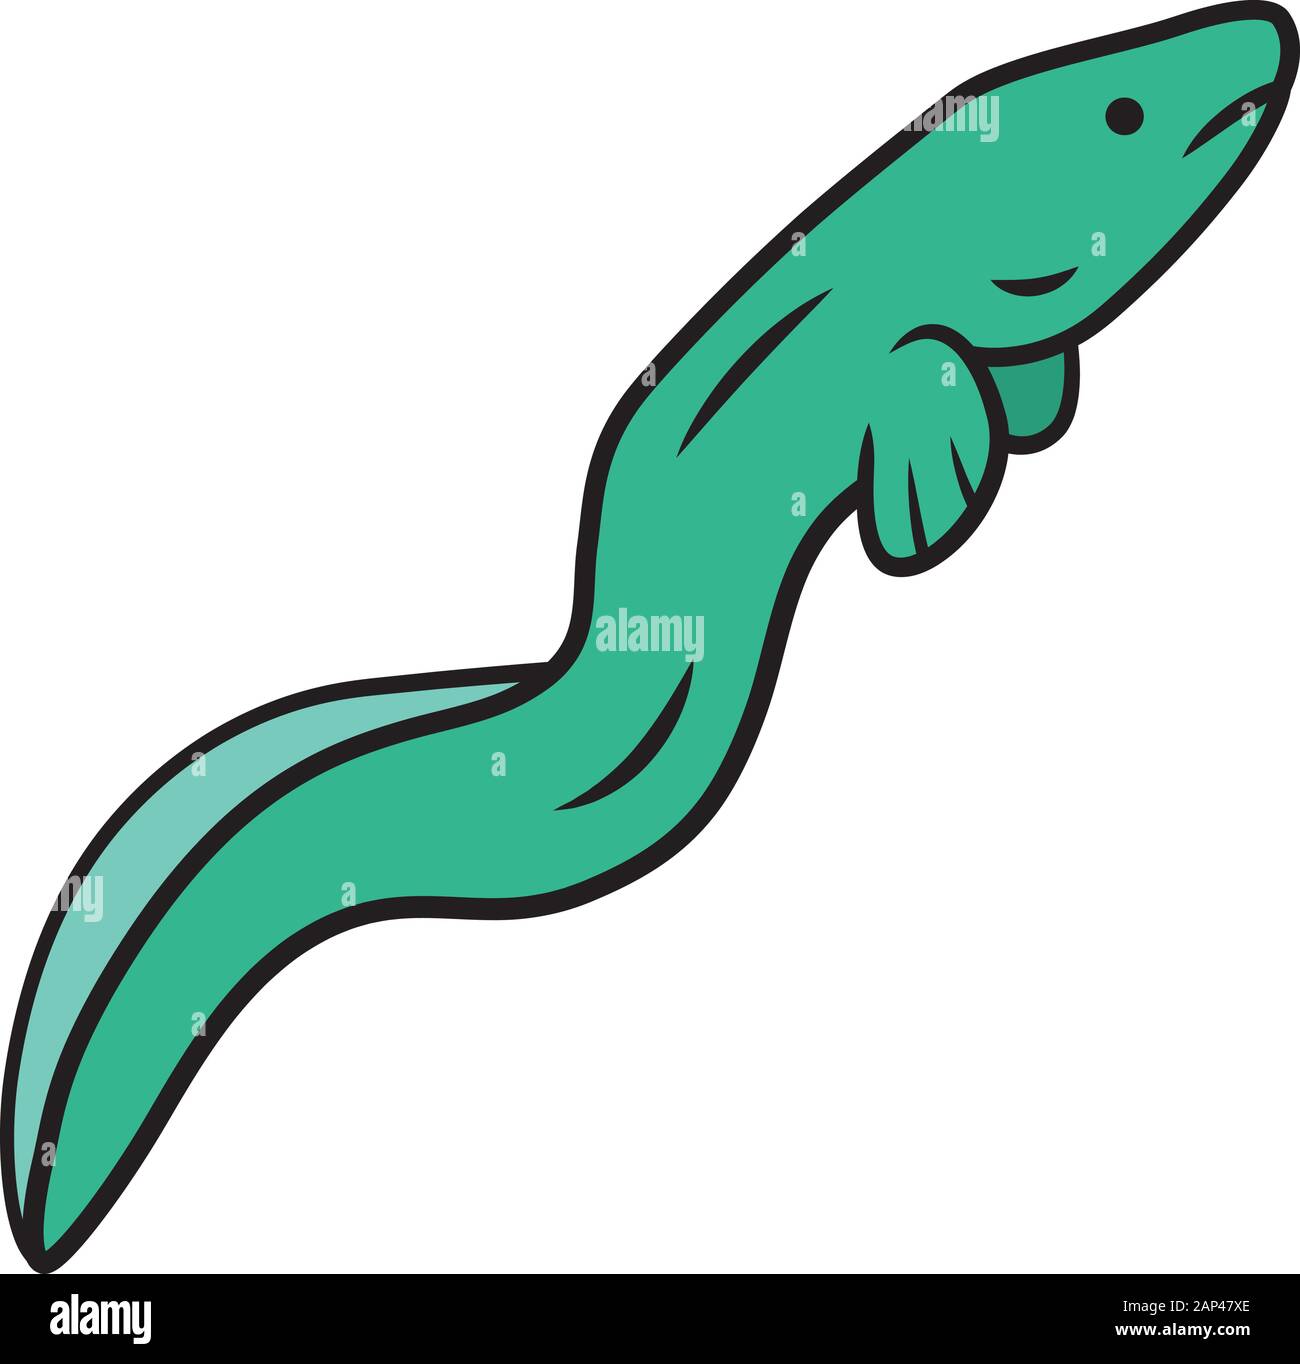 L'icône de couleur verte de l'anguille. Snakelike flottant poisson. Sous l'eau de mer animal avec une peau lisse. Fruits de mer asiatique, sushi ingrédient. Une créature de forme de serpent Illustration de Vecteur